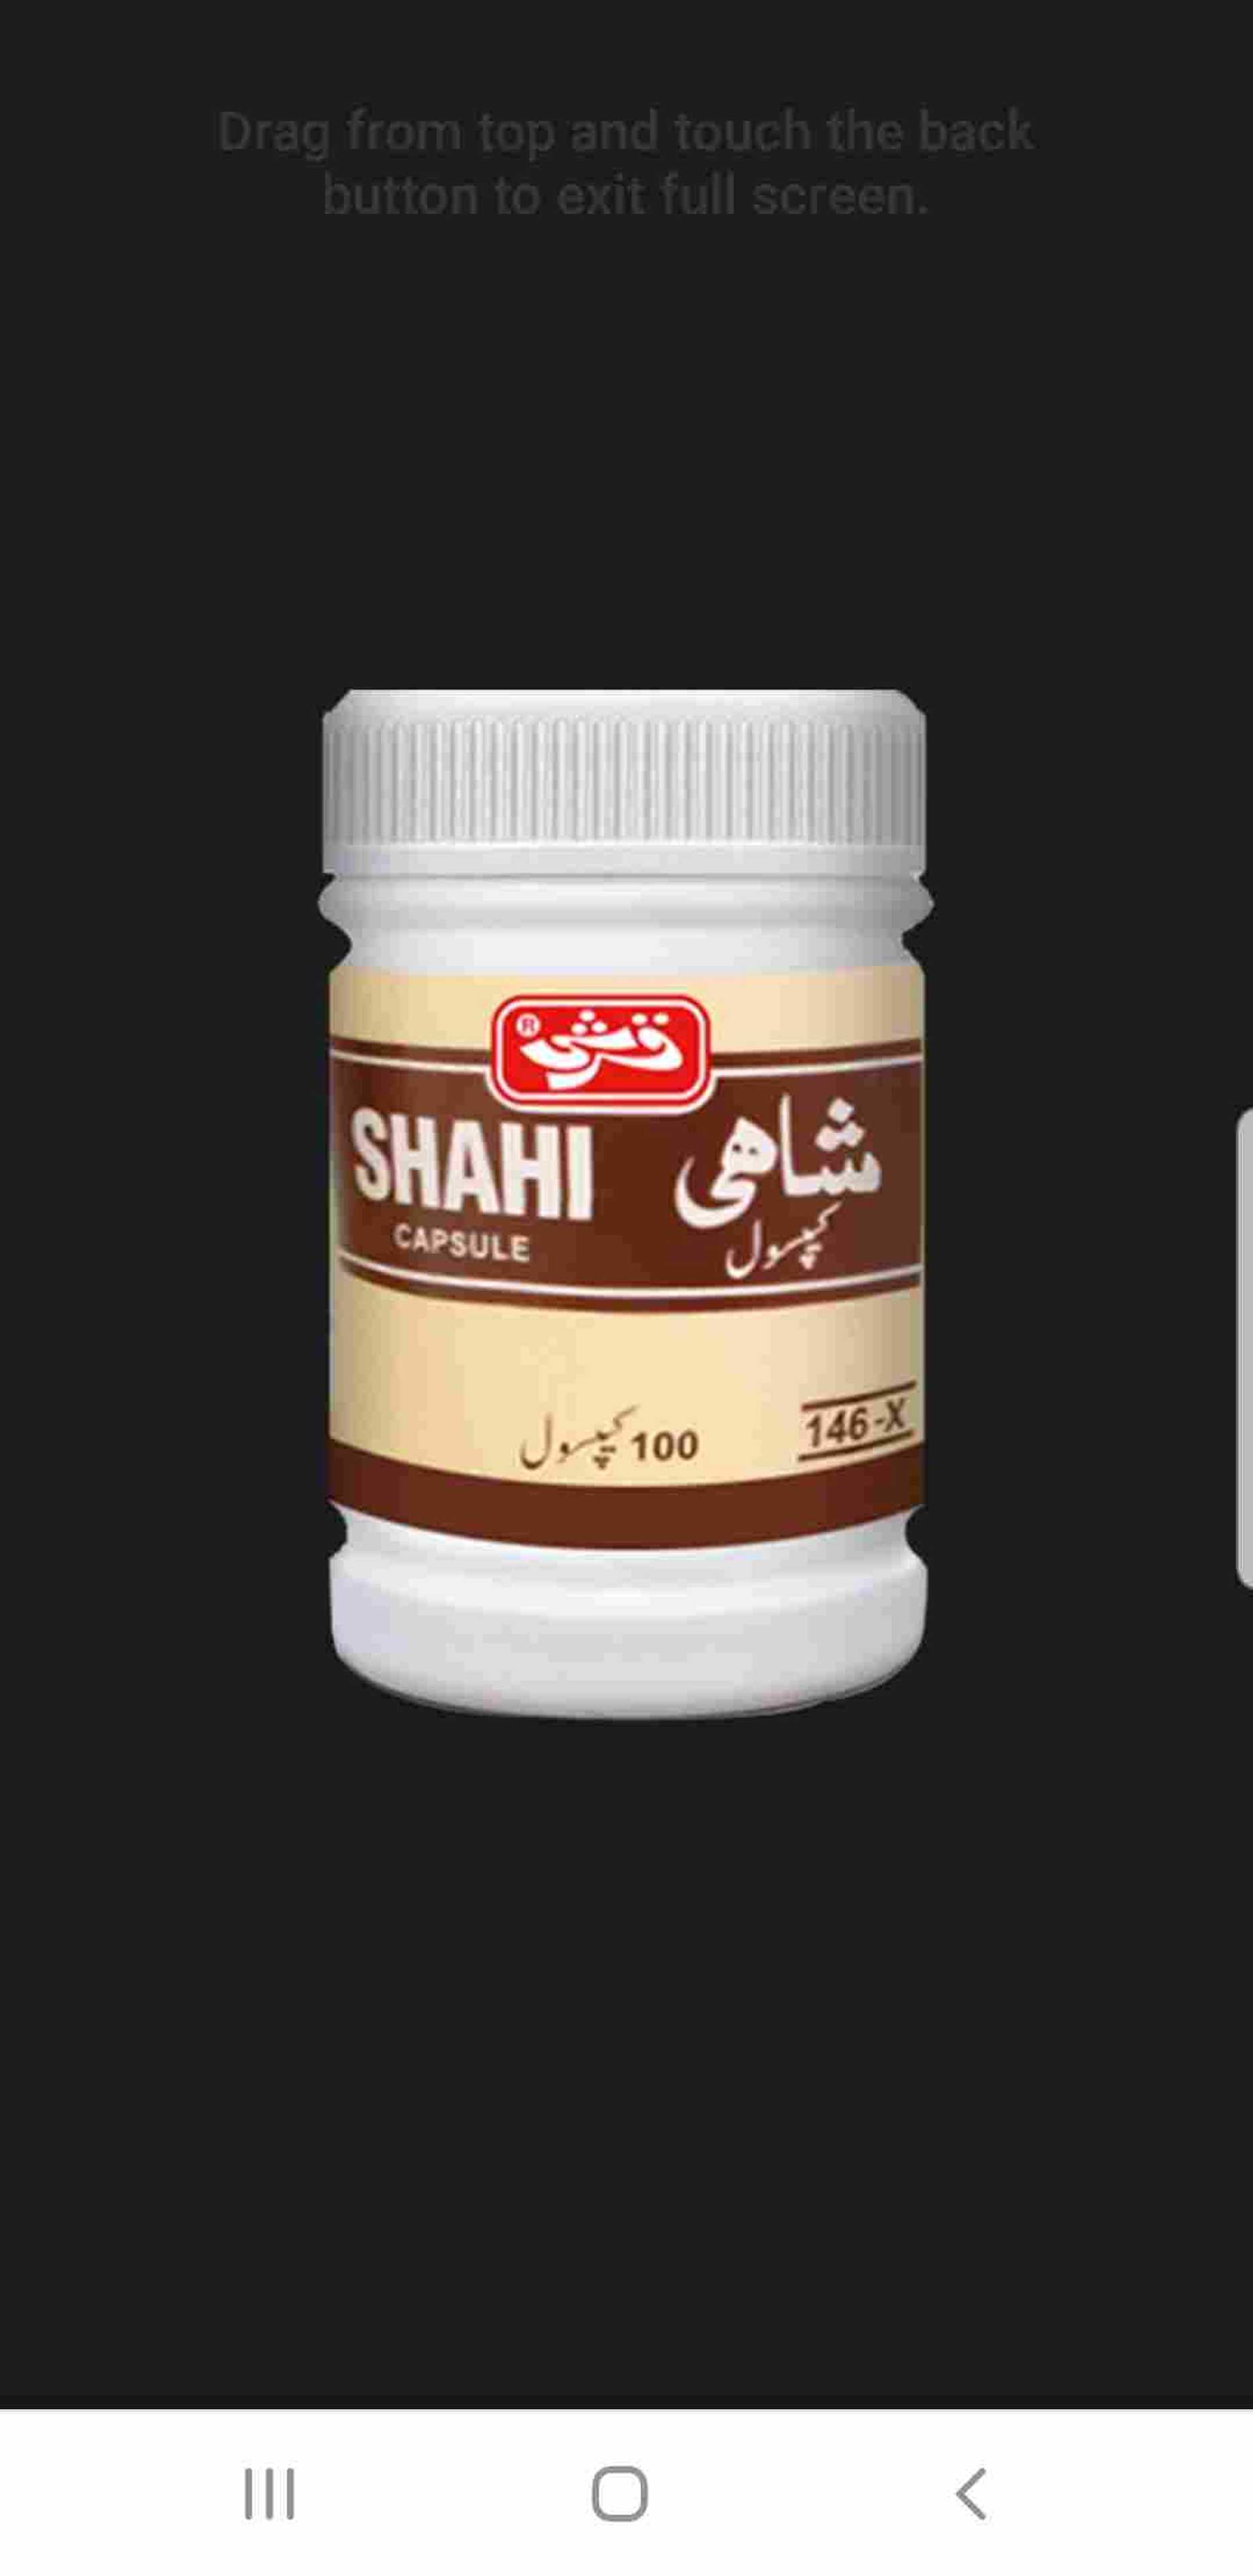 Shahi Capsules

